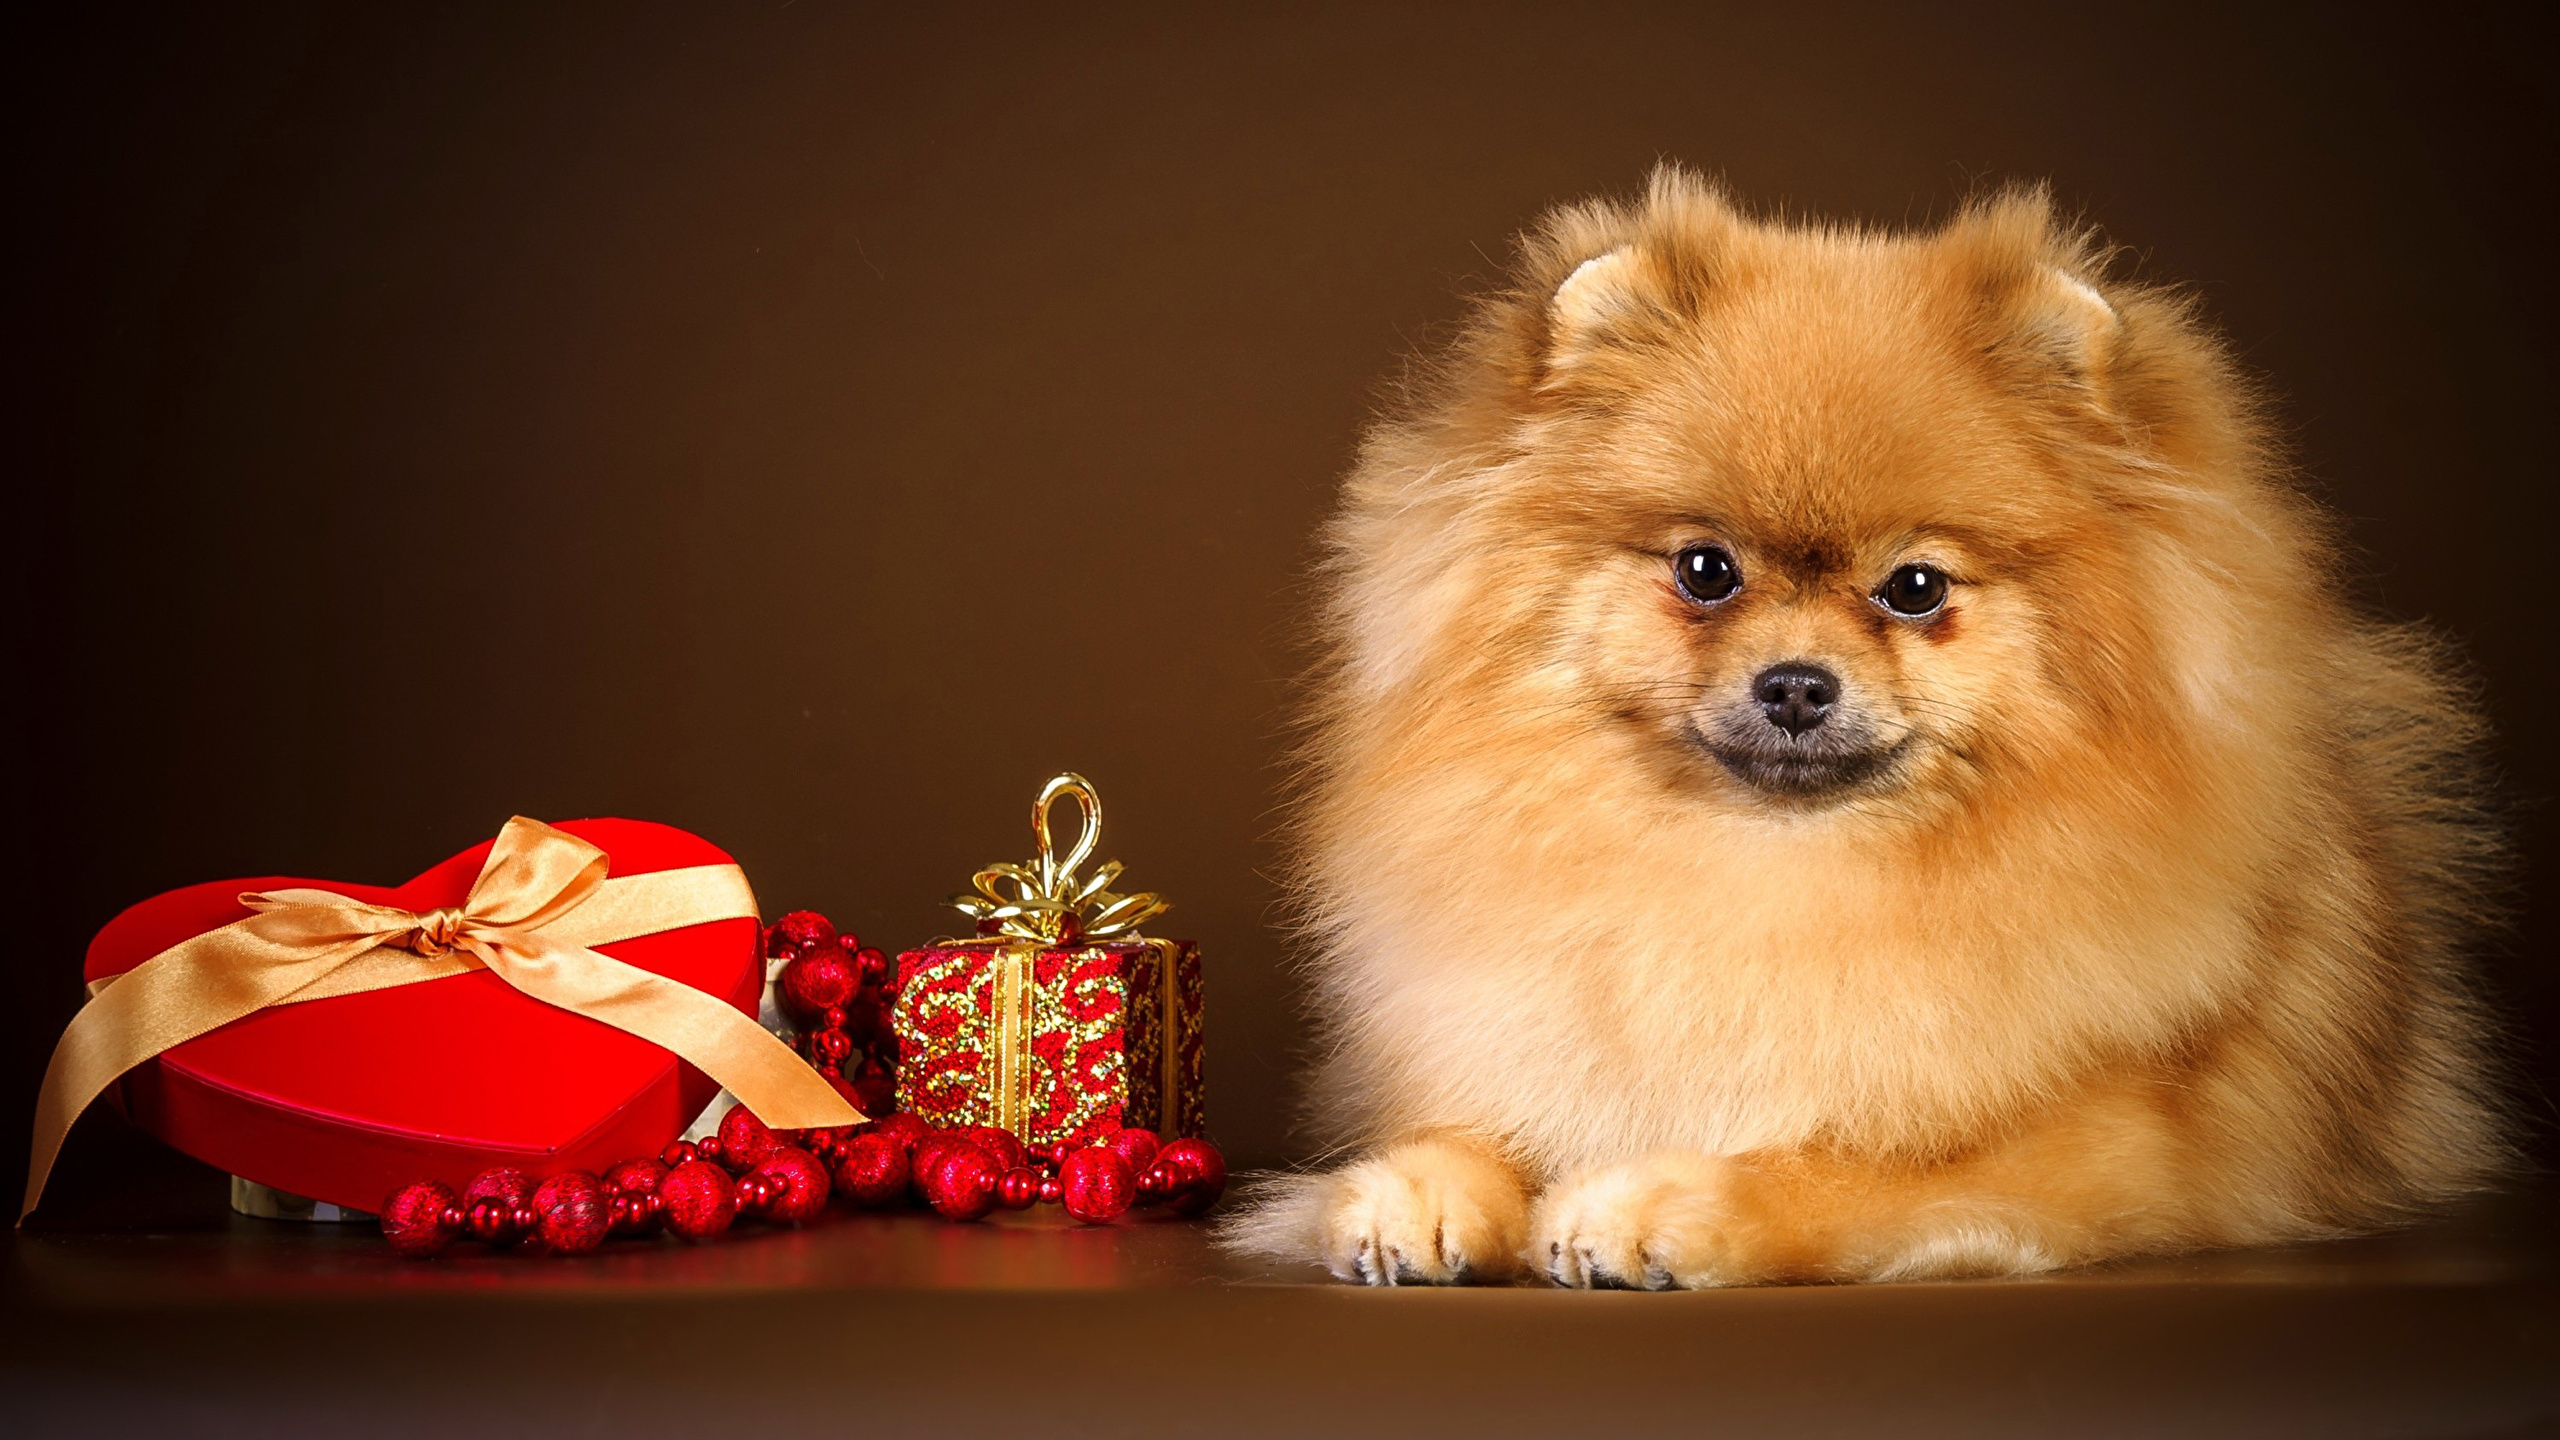 壁紙 2560x1440 イヌ 祝日 バレンタインデー 色の背景 スピッツ犬 ハート 贈り物 動物 ダウンロード 写真